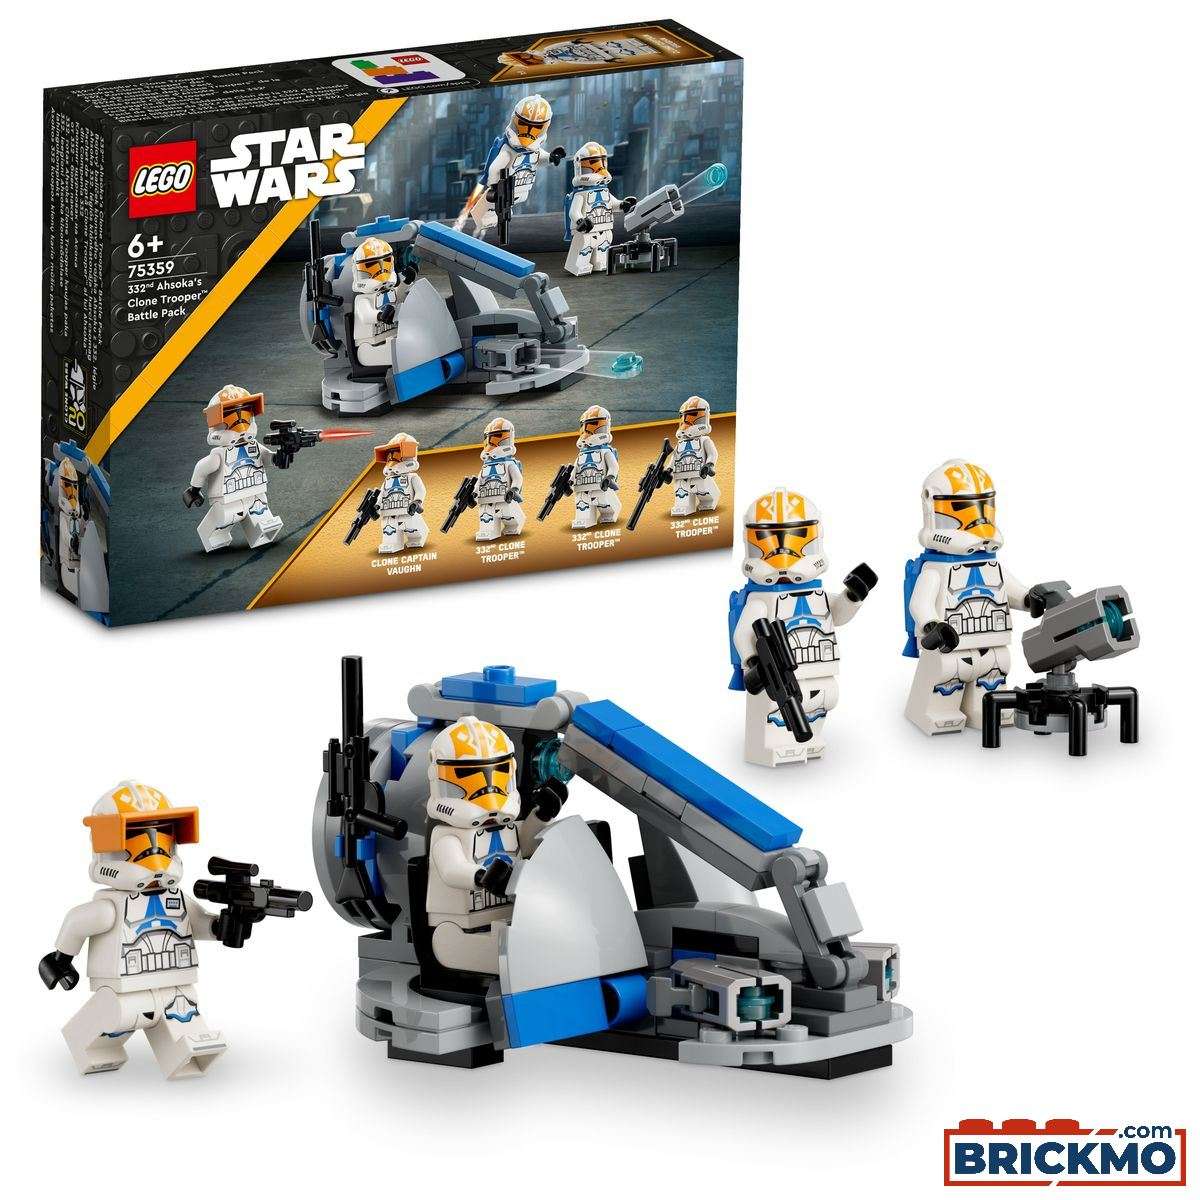 LEGO Star Wars 75359 332nd Ahsoka&#039;s Clone Trooper Battle Pack 75359